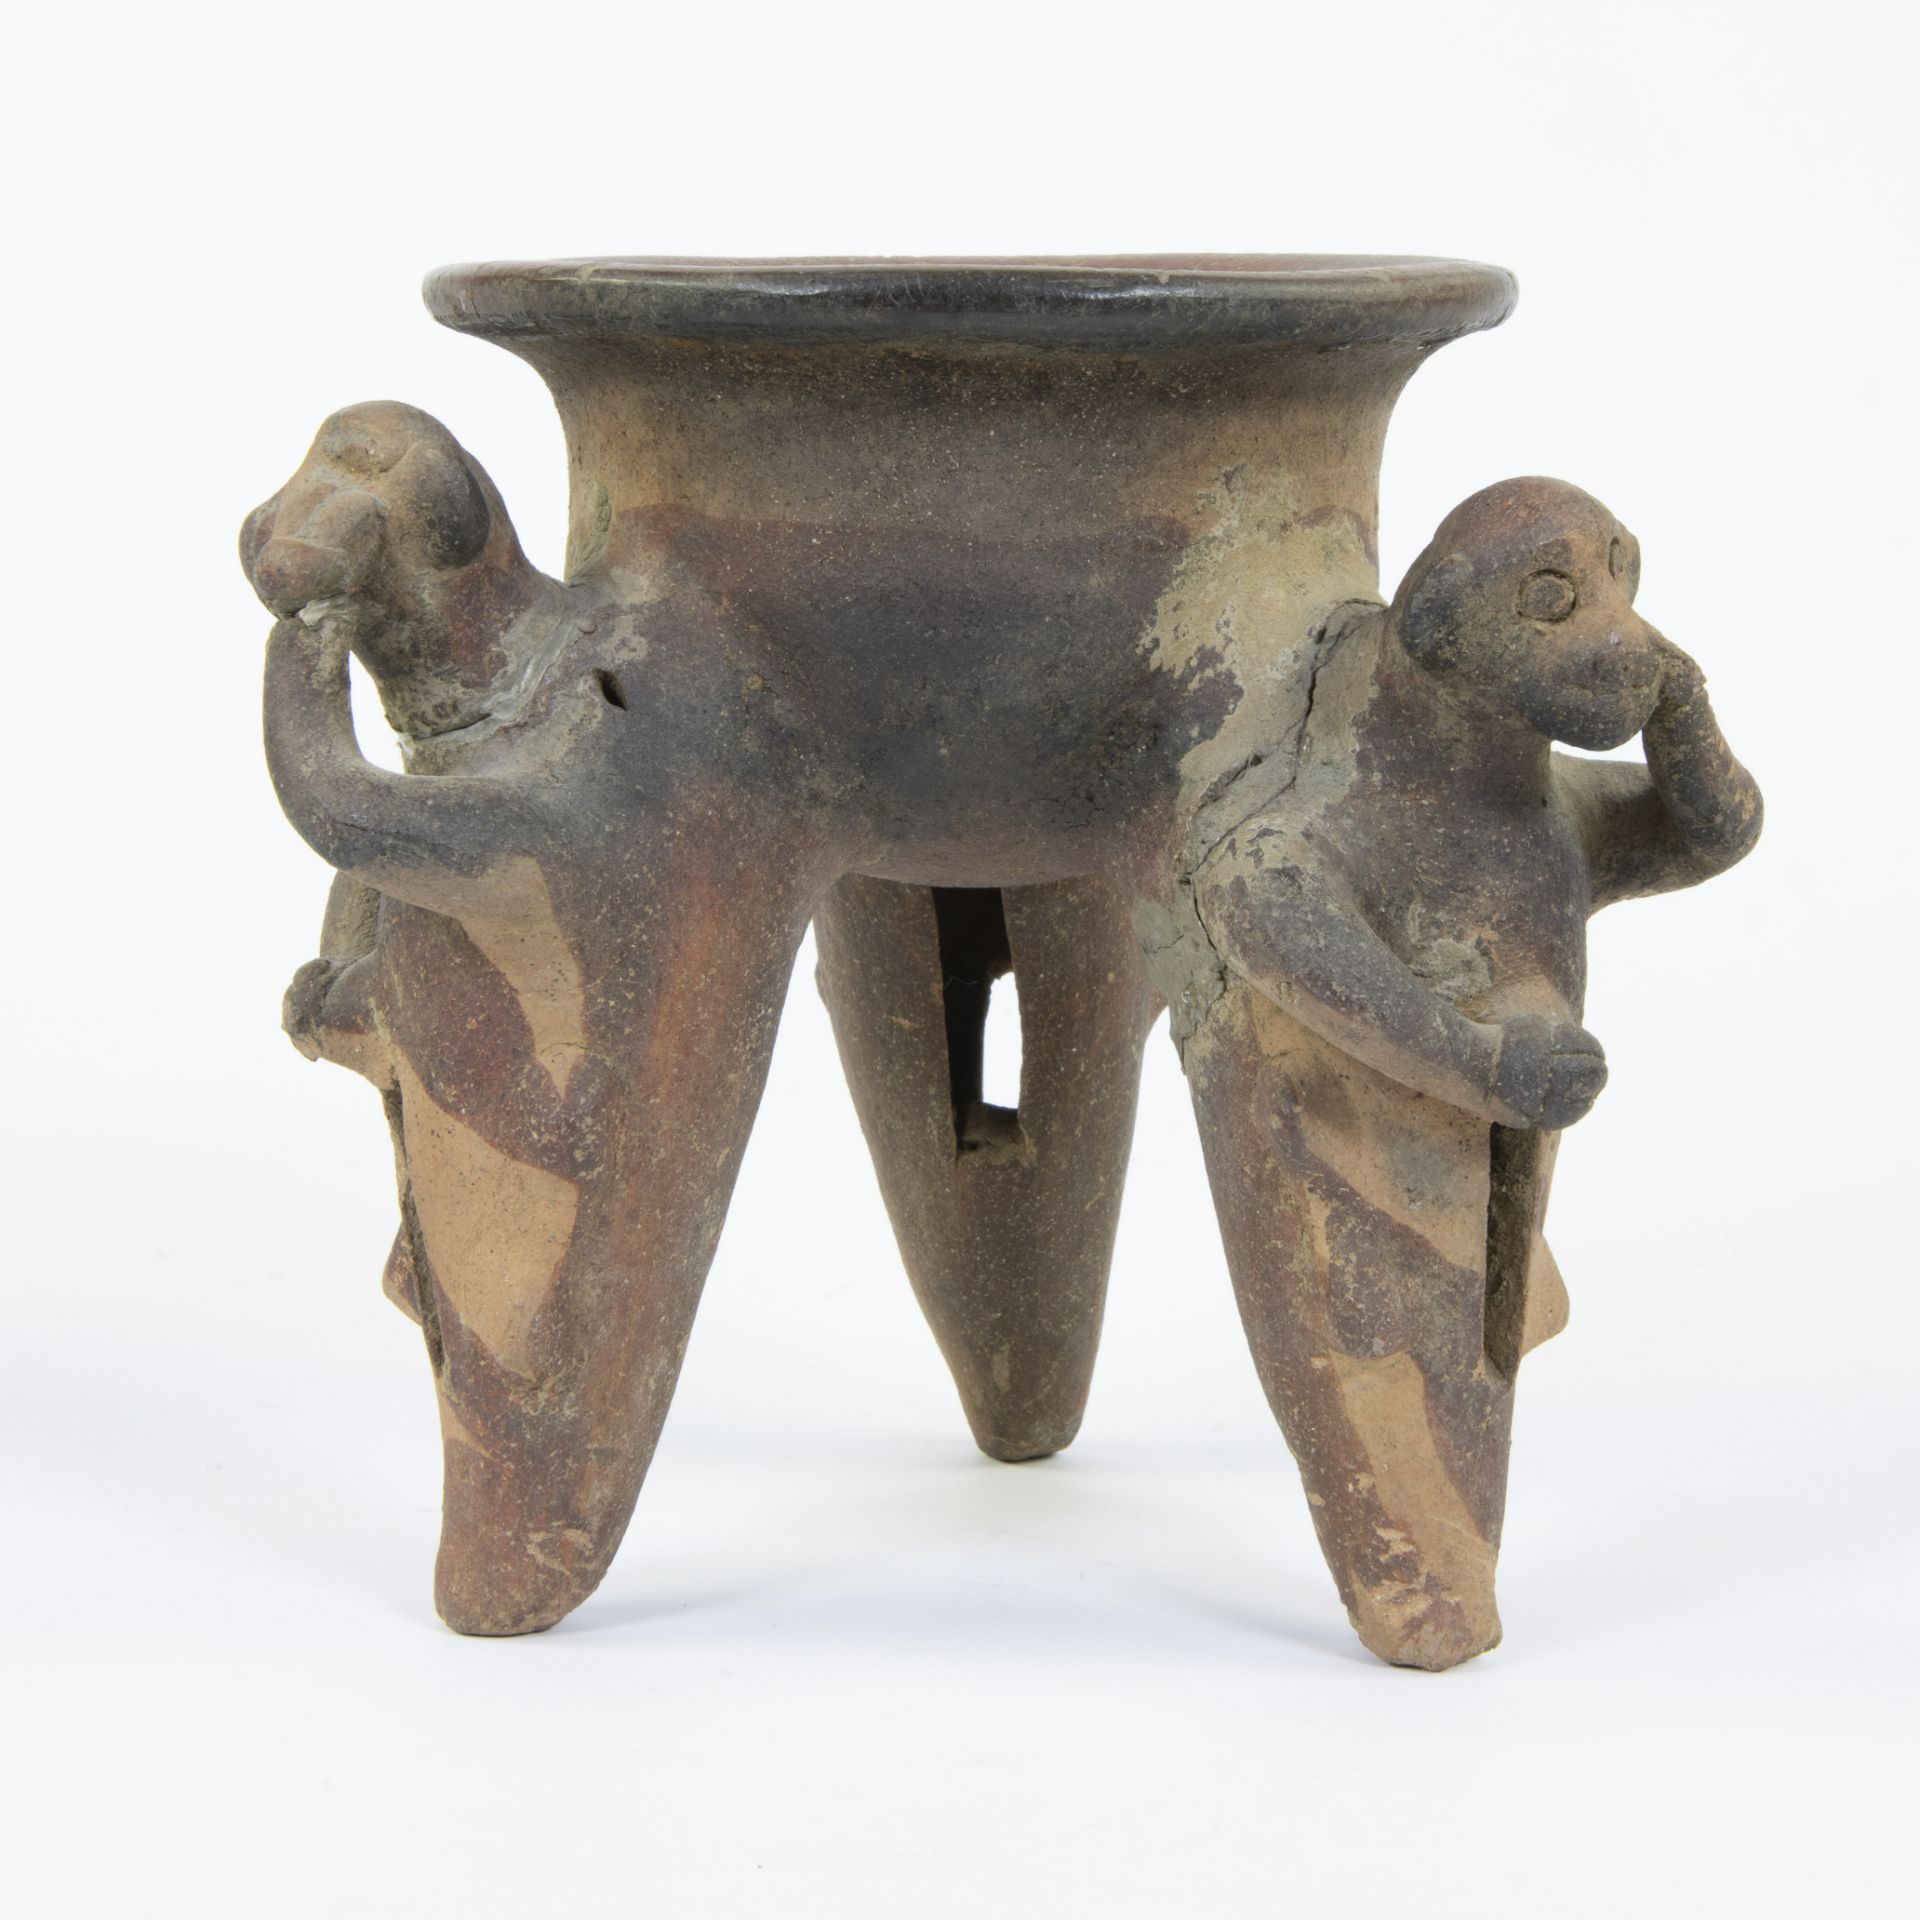 Ancient Pre Columbian Costa Rica earthenware tripot vessel - Bild 2 aus 5